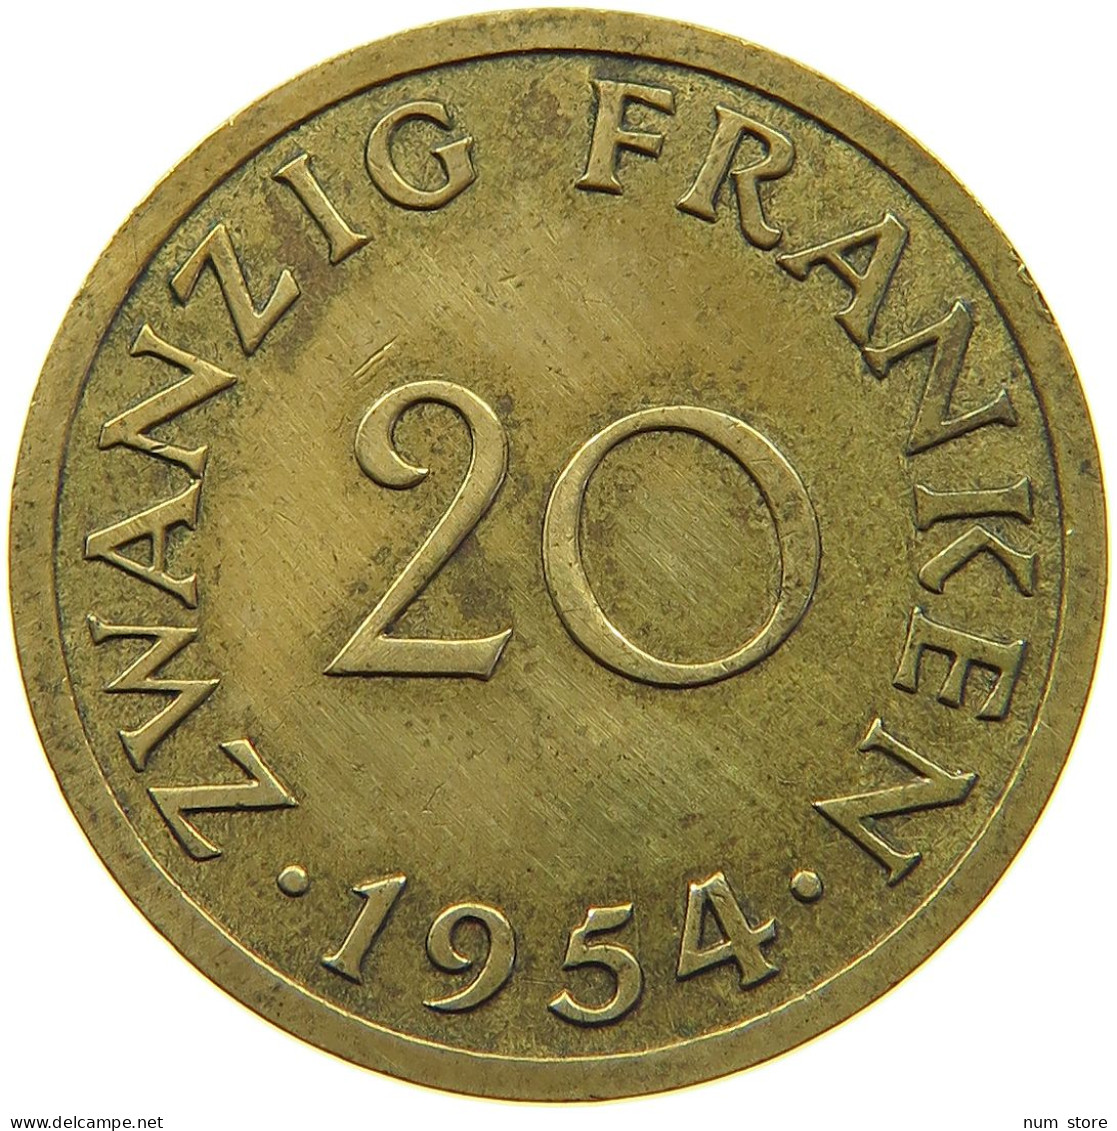 GERMANY 20 FRANKEN 1954 SAARLAND #c055 0243 - 20 Franken